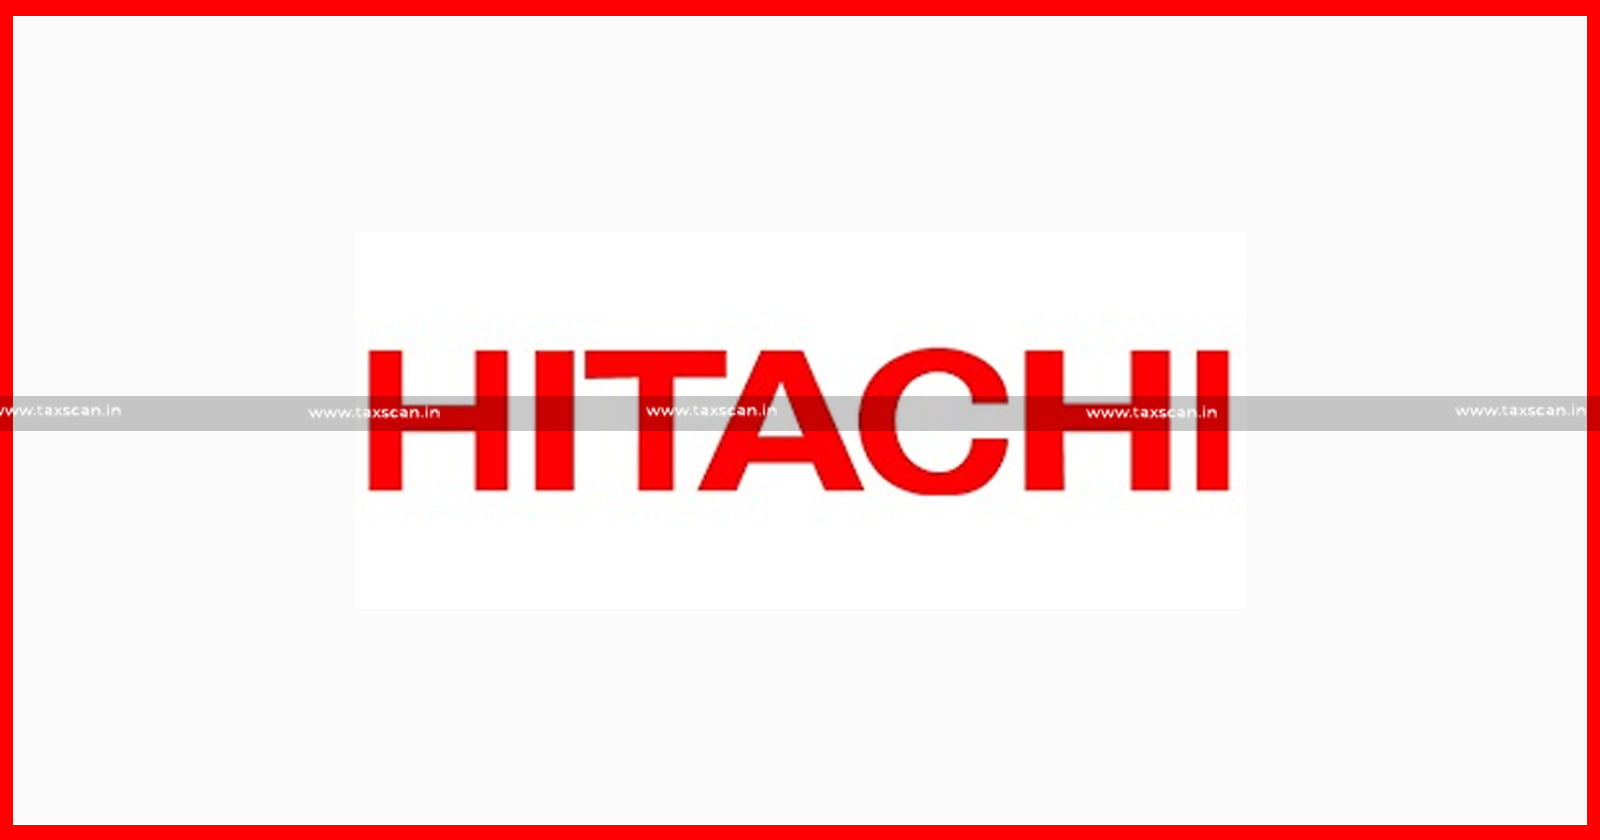 CA - MBA - MBA Vacancy - Hitachi - MBA Vacancy in Hitachi - CA Vacancy in Hitachi - taxscan